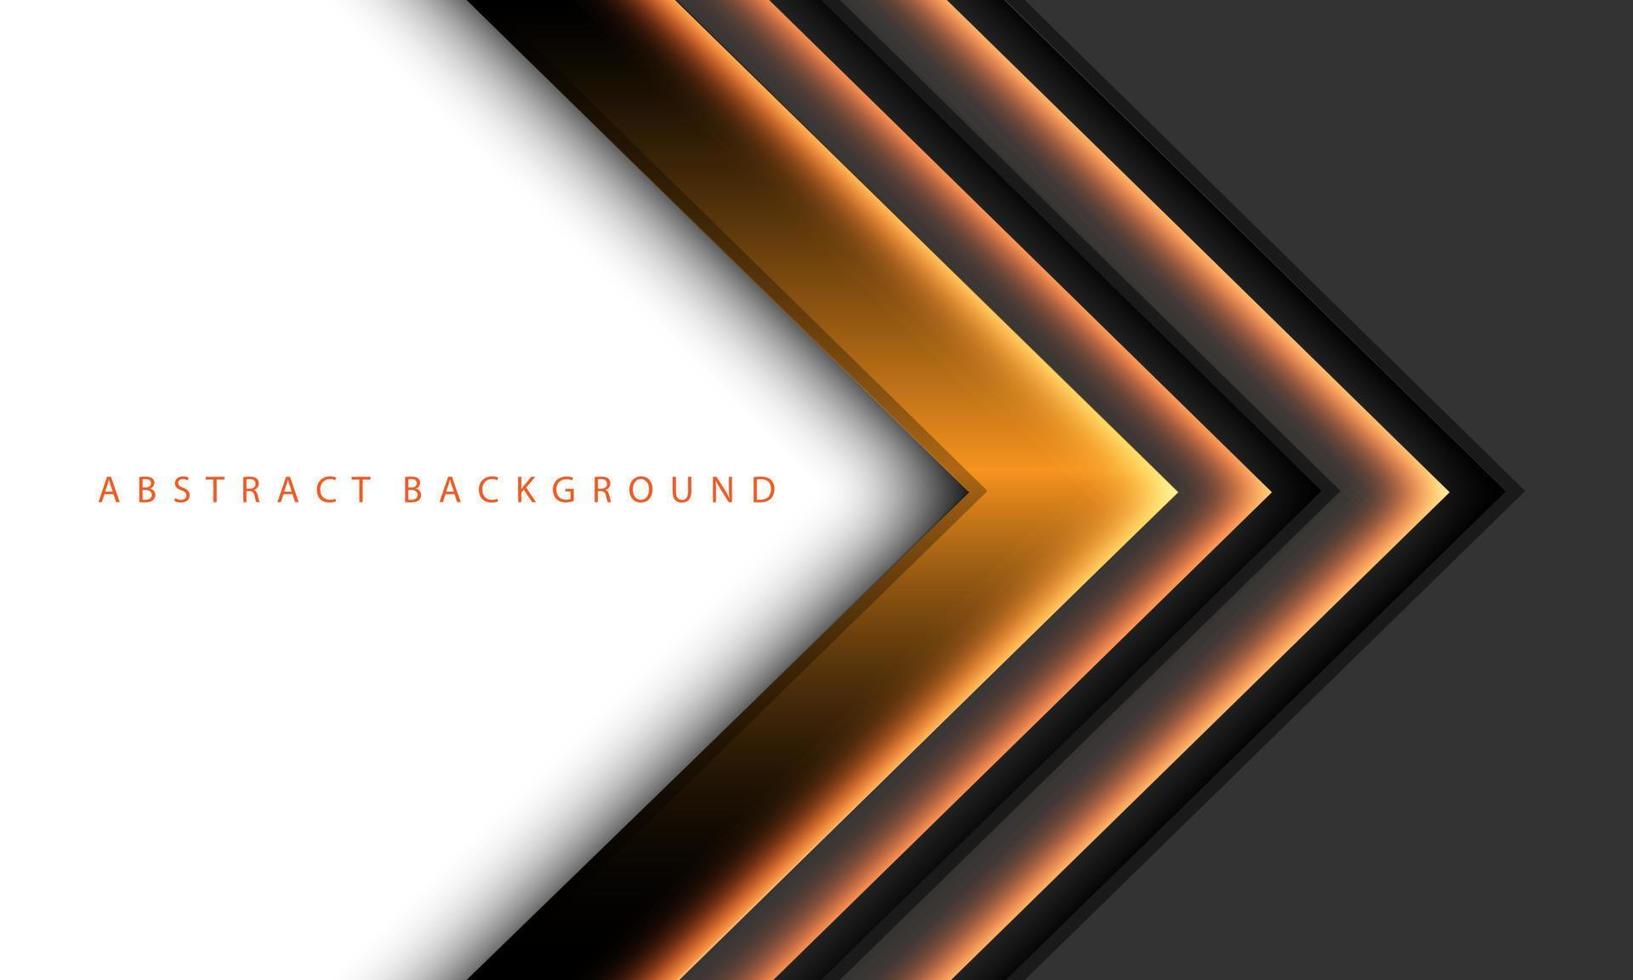 direzione dell'ombra della luce della freccia arancione astratta sul grigio scuro metallizzato con il design dello spazio vuoto bianco moderno vettore di sfondo della tecnologia futuristica